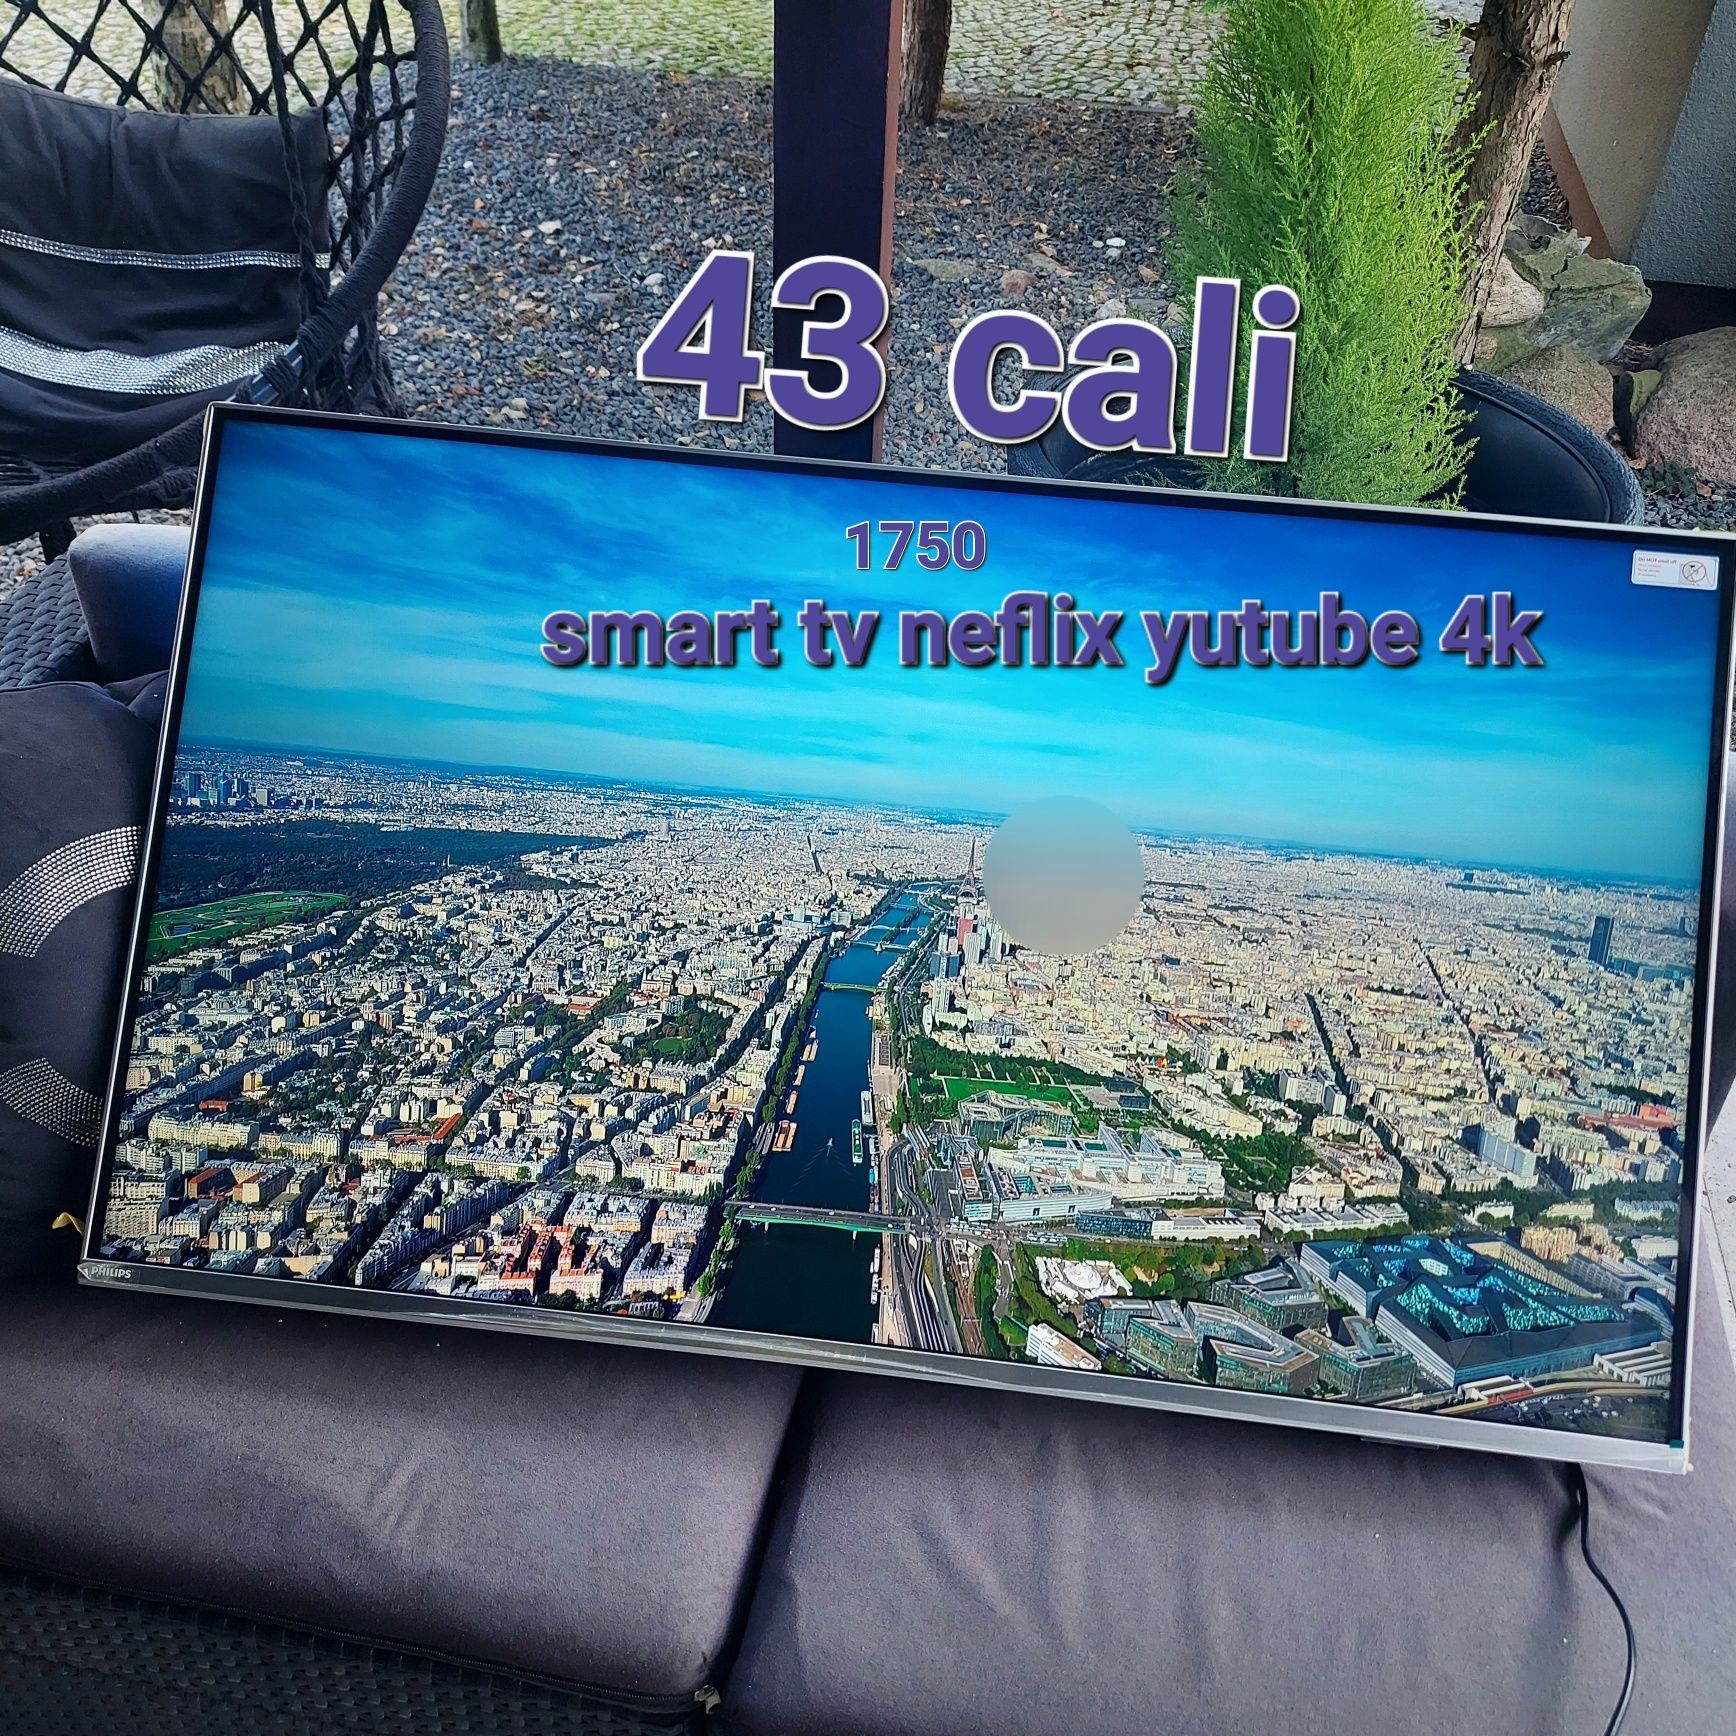 telewizor 75 cali  smart YouTube neflix z gwarancją